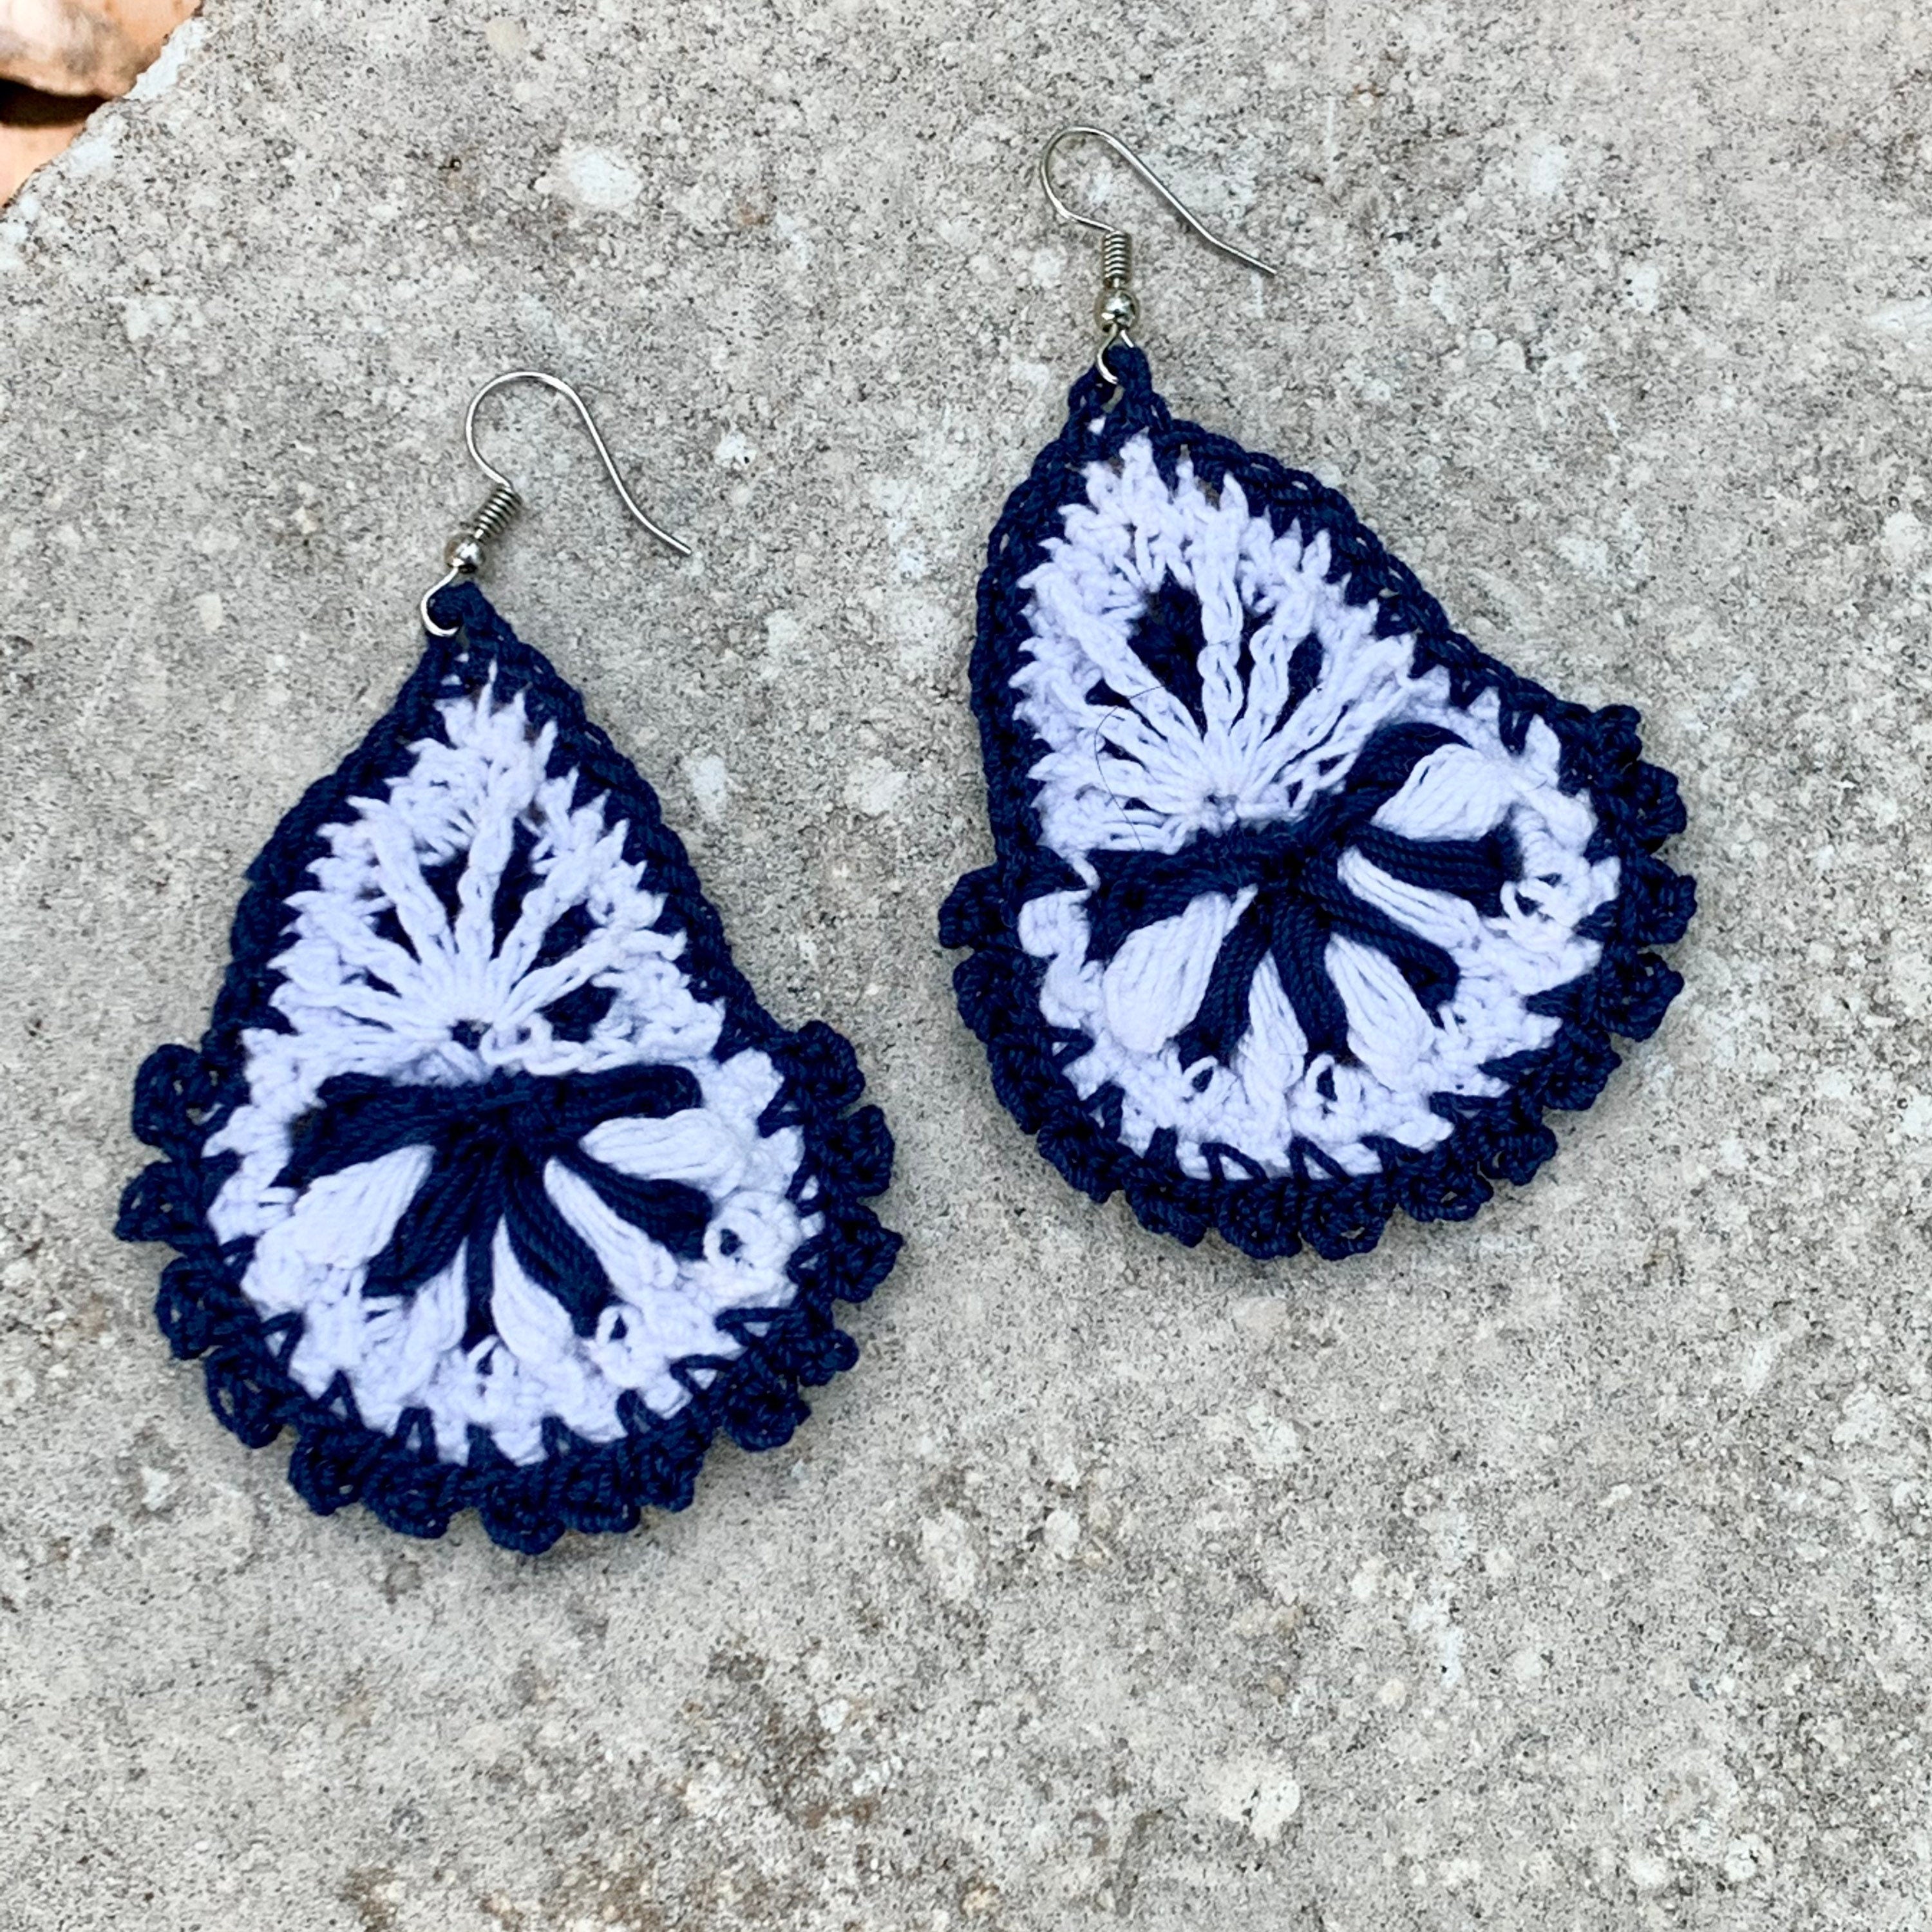 Navy Blue and White Boho Style Earrings- Light Weight Crochet Teardrop Earrings